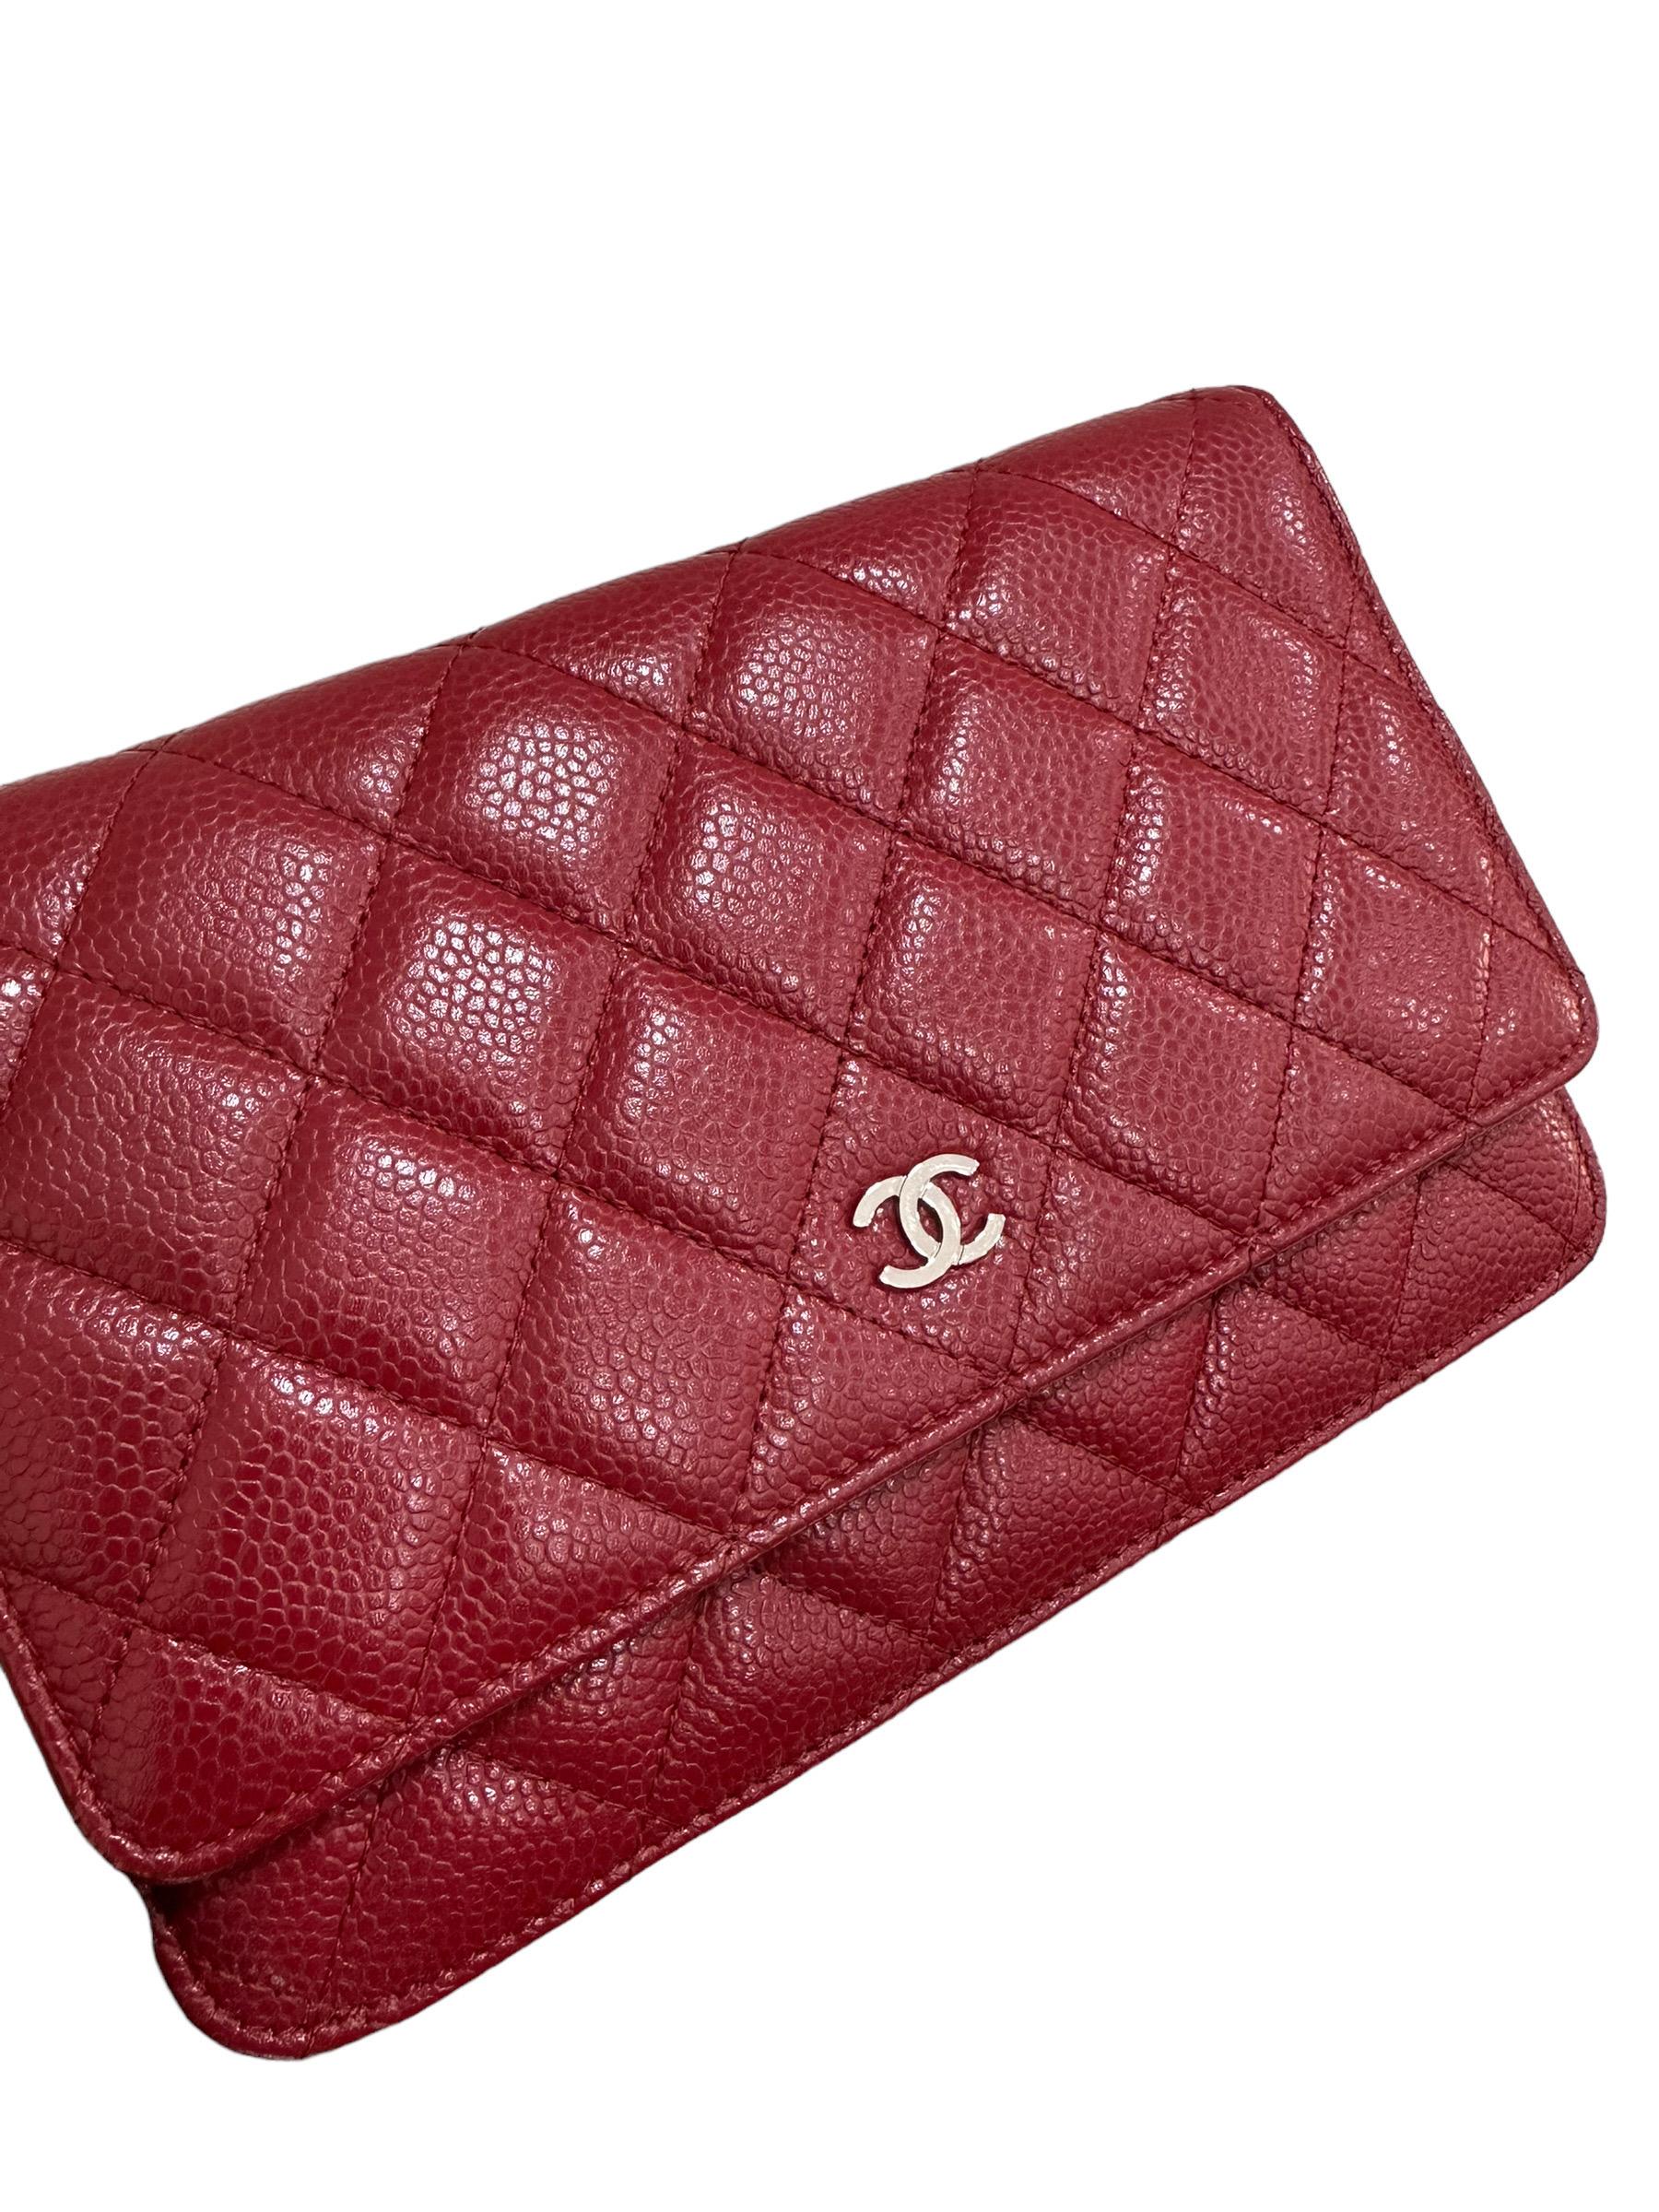 Borsa firmata Chanel, modello Woc, wallet on chain, realizzata in pelle caviar rossa con hardware argento. La borsa è dotata di una patta con chiusura a bottone, internamente rivestita in pelle tono su tono, con tasche portacarte e tasca sulla patta